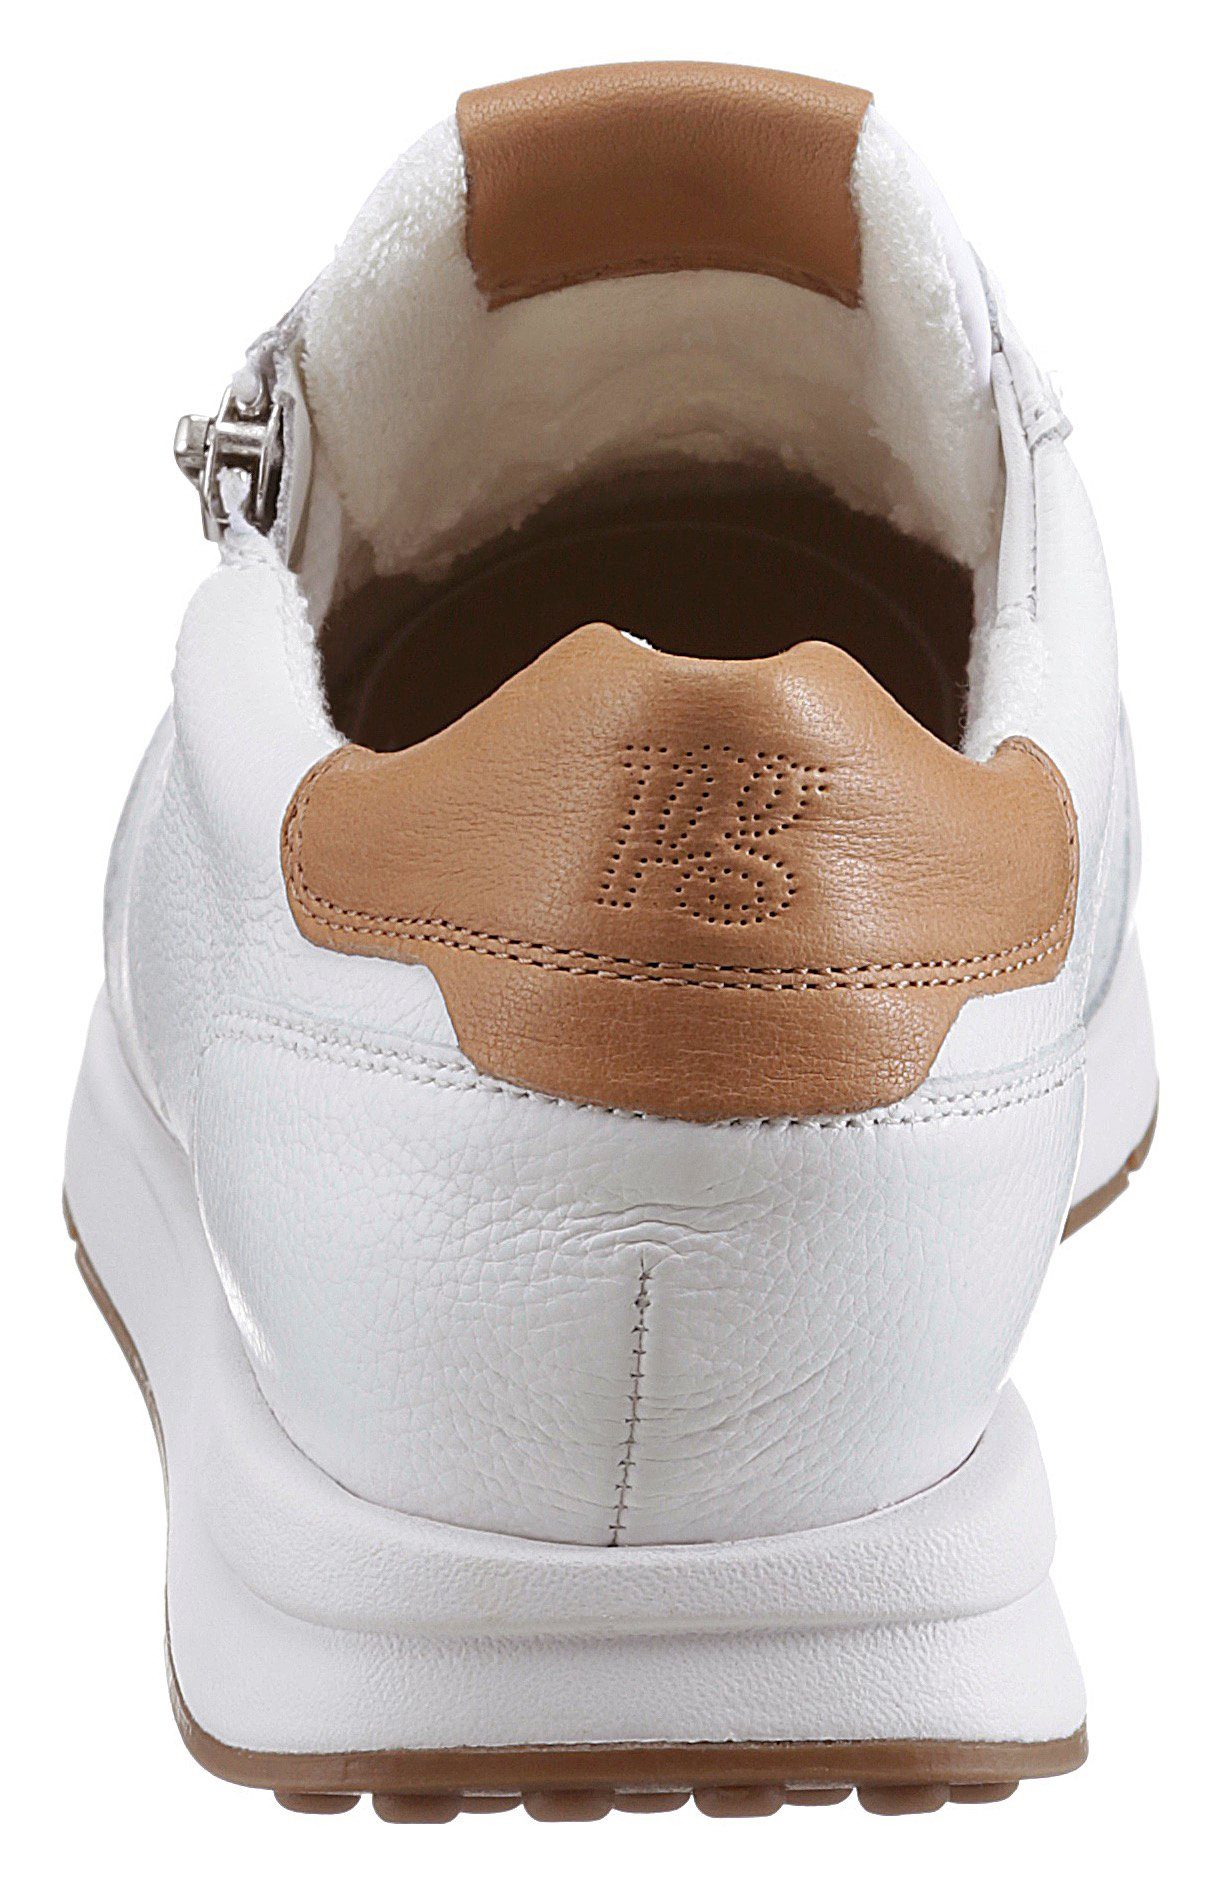 Paul Green Sneaker mit Kontrast-Details dezenten weiß-curryfarben